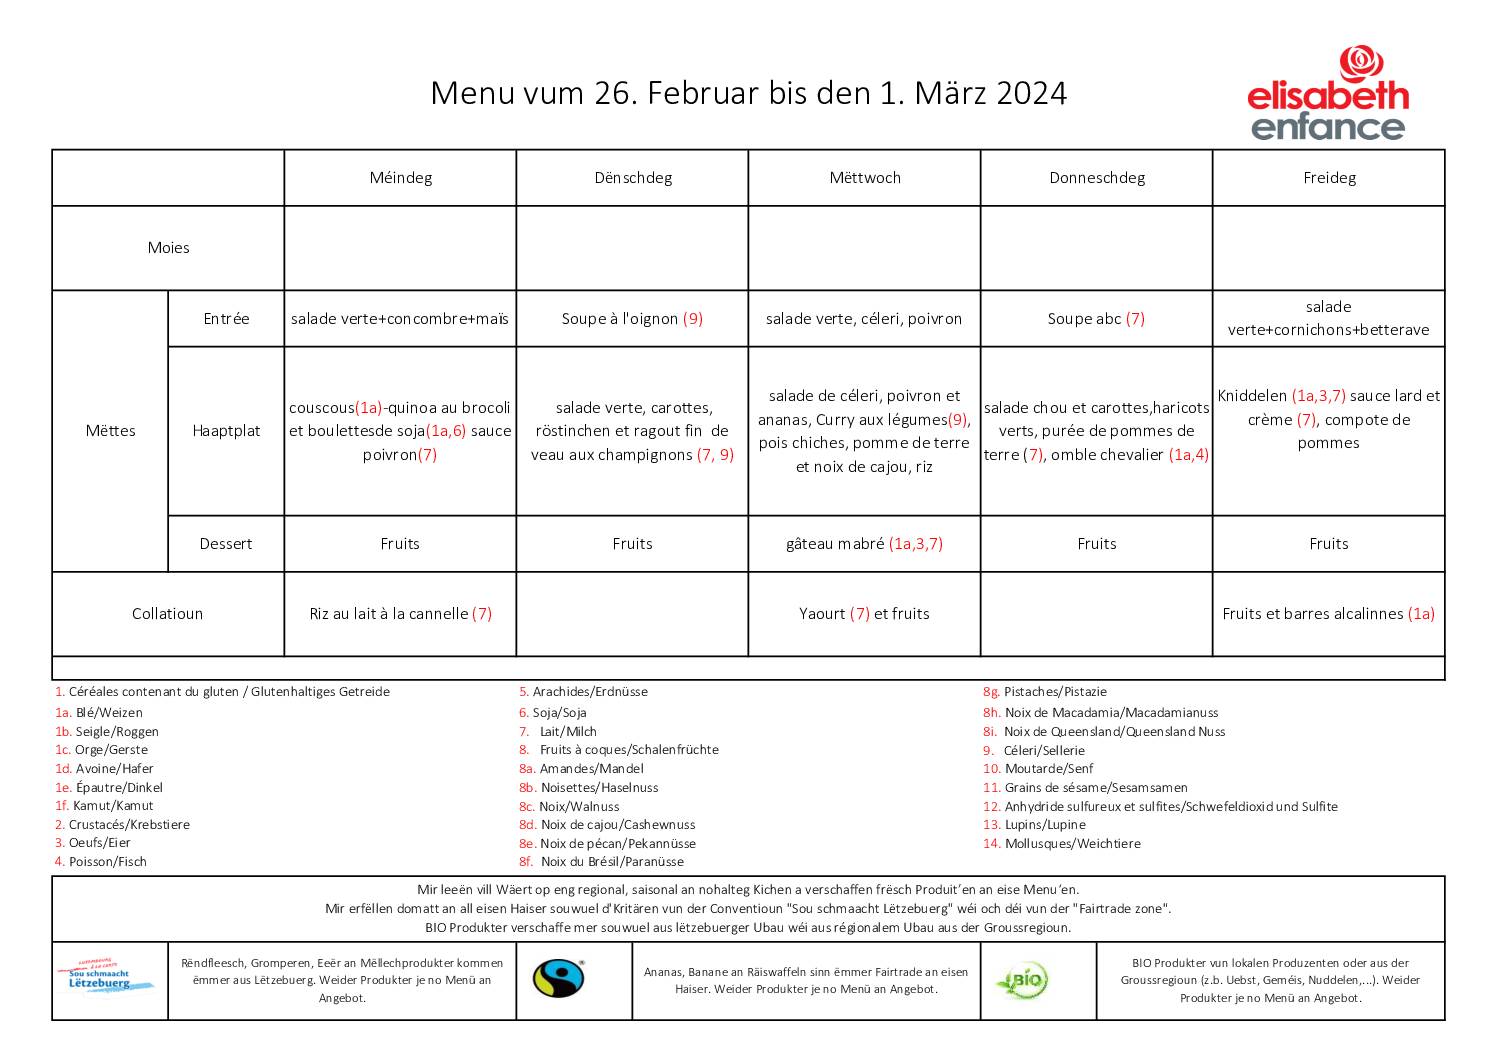 menus de la semaine du 26 février au 1 mars 2024